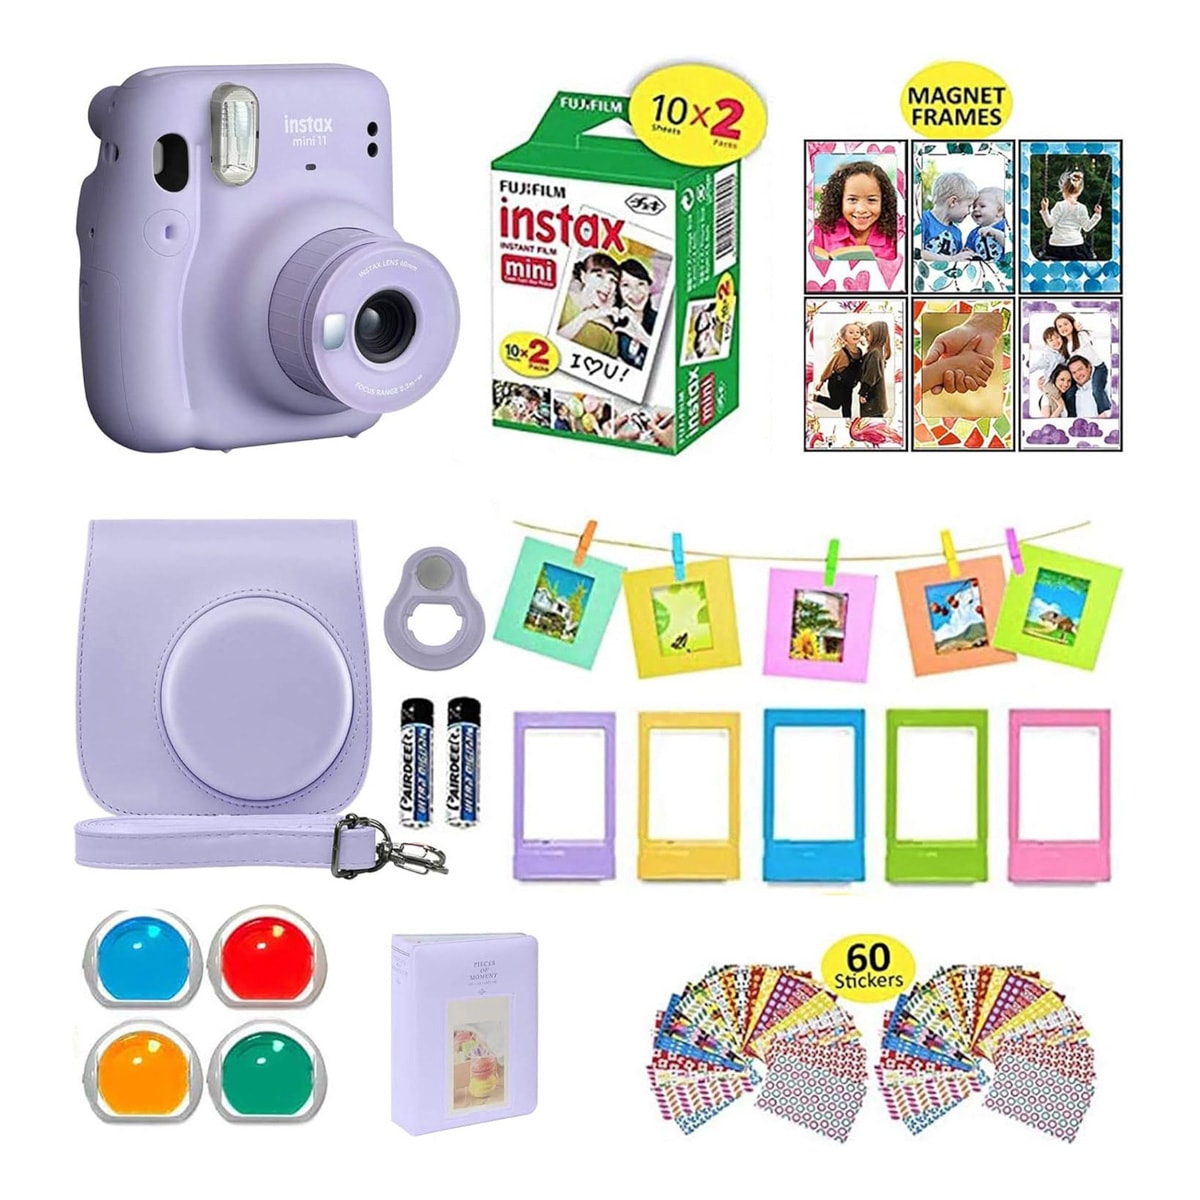 Fujifilm Instax Mini 11 camera with case and accessories.